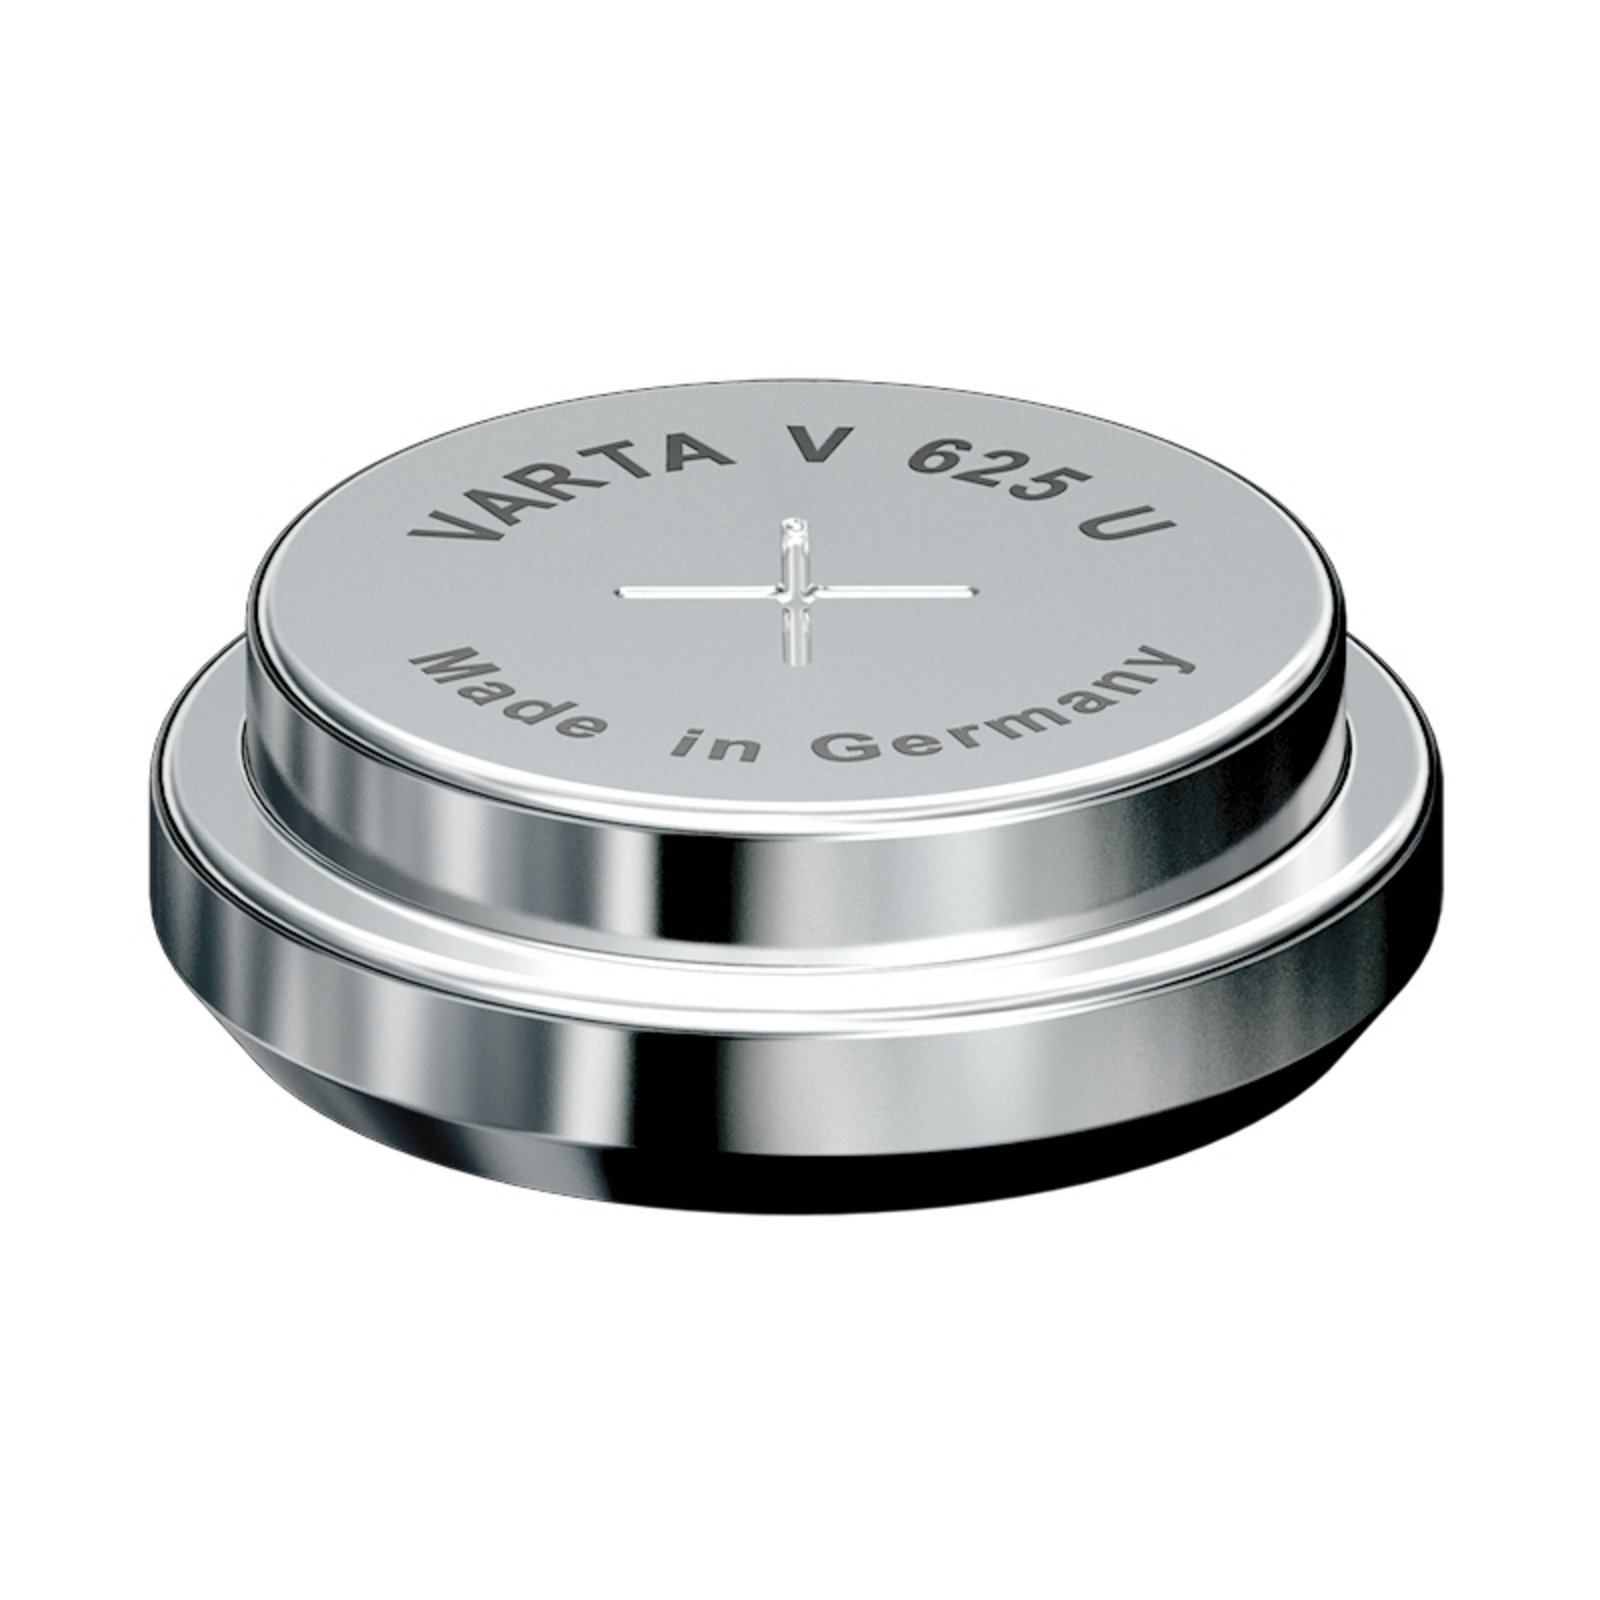 V625U 1.5 V button cell from VARTA